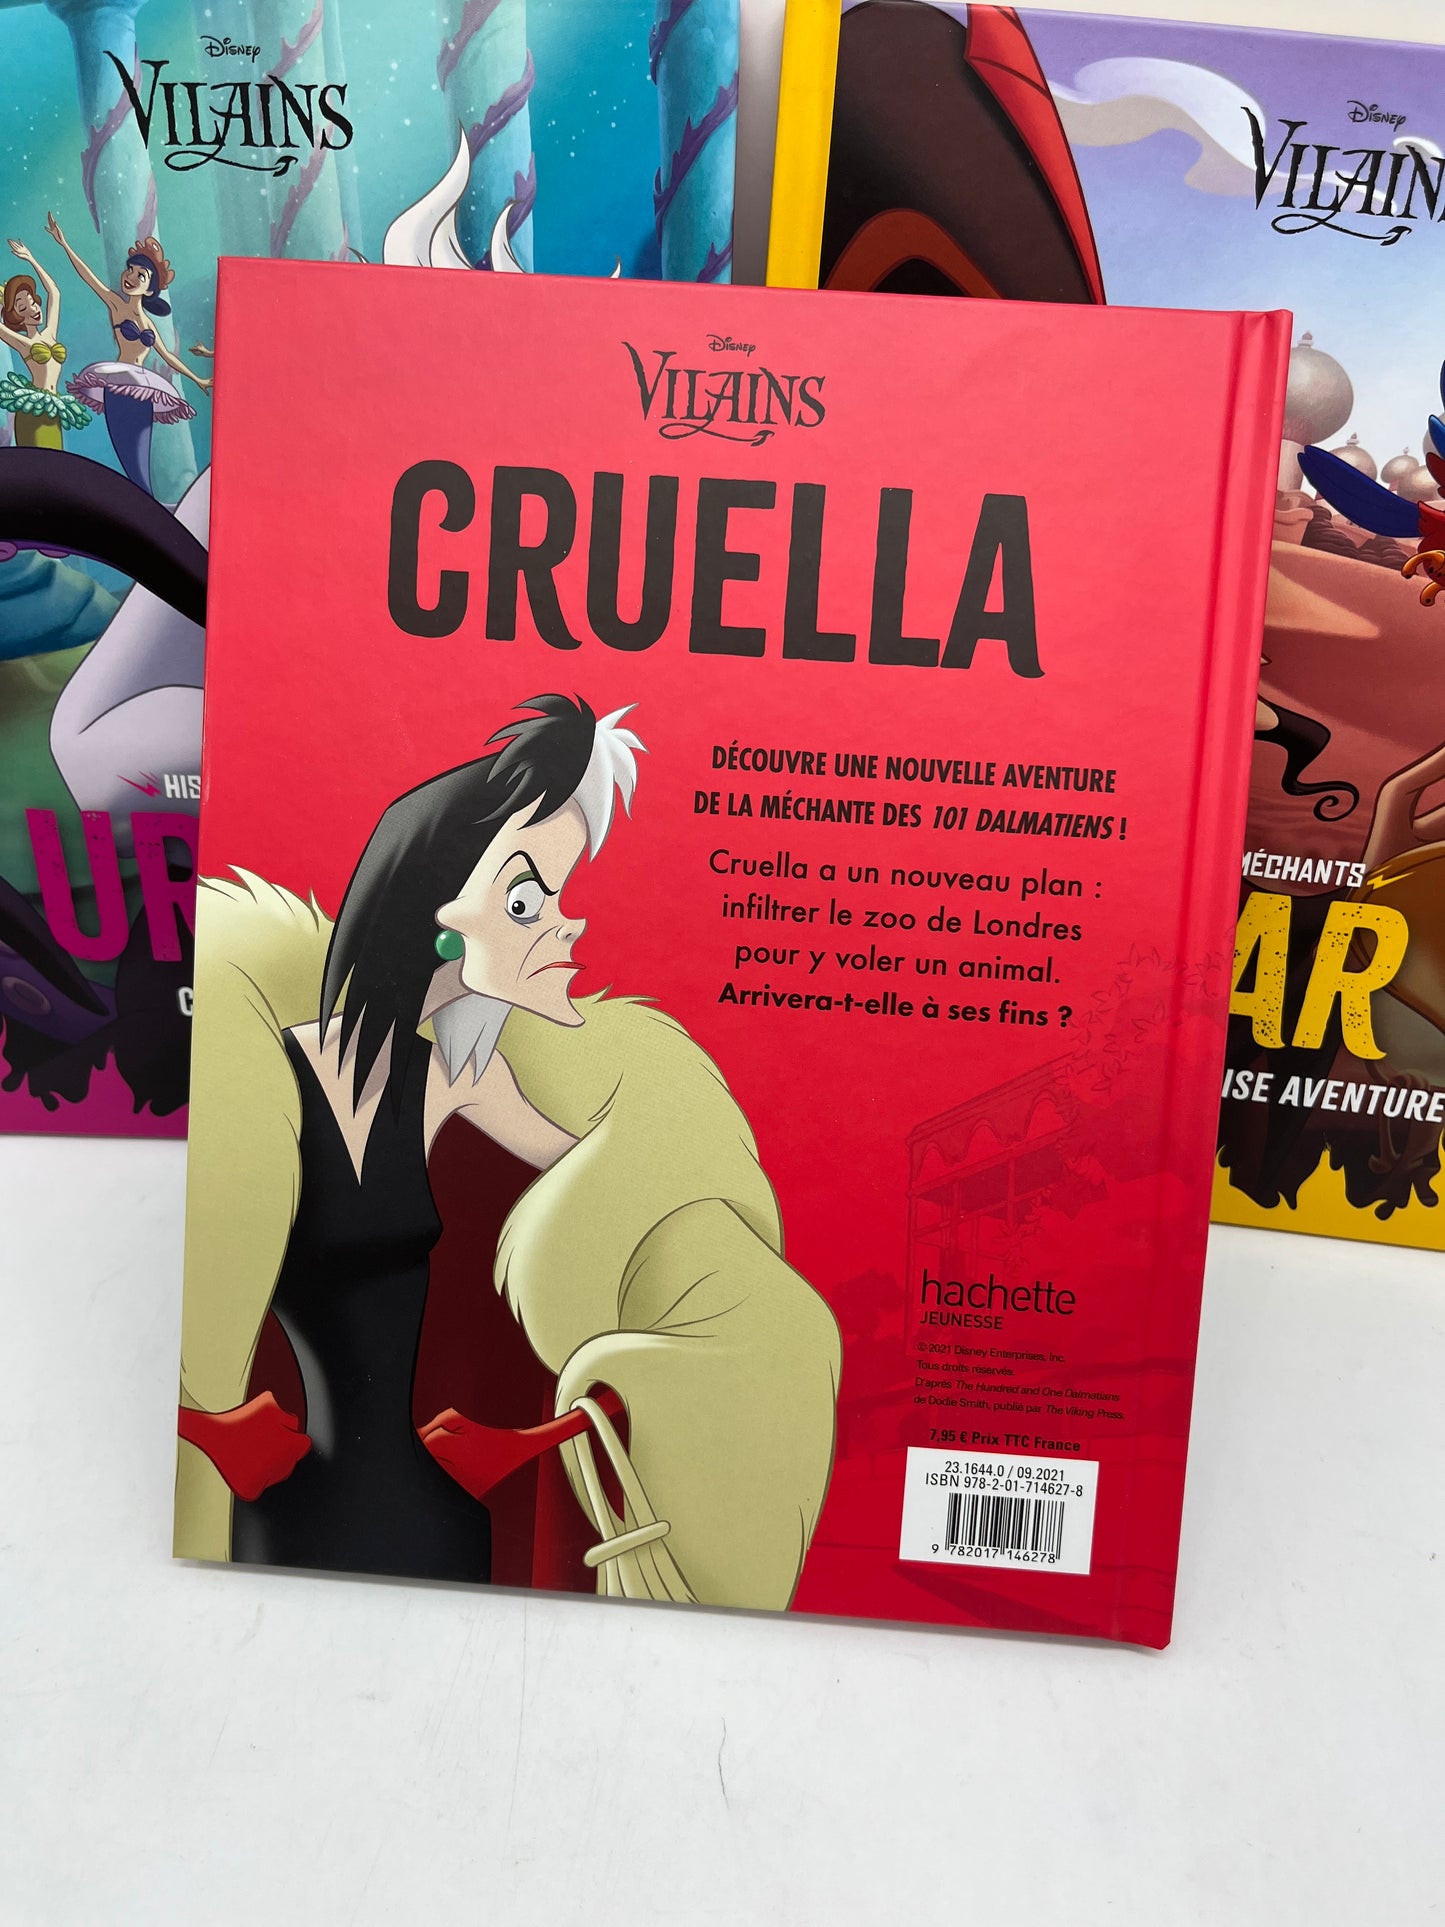 Lot de 3 Livres Histoires Disney collection les Vilains Cruella Djafar Ursula Neuf special Halloween 🎃